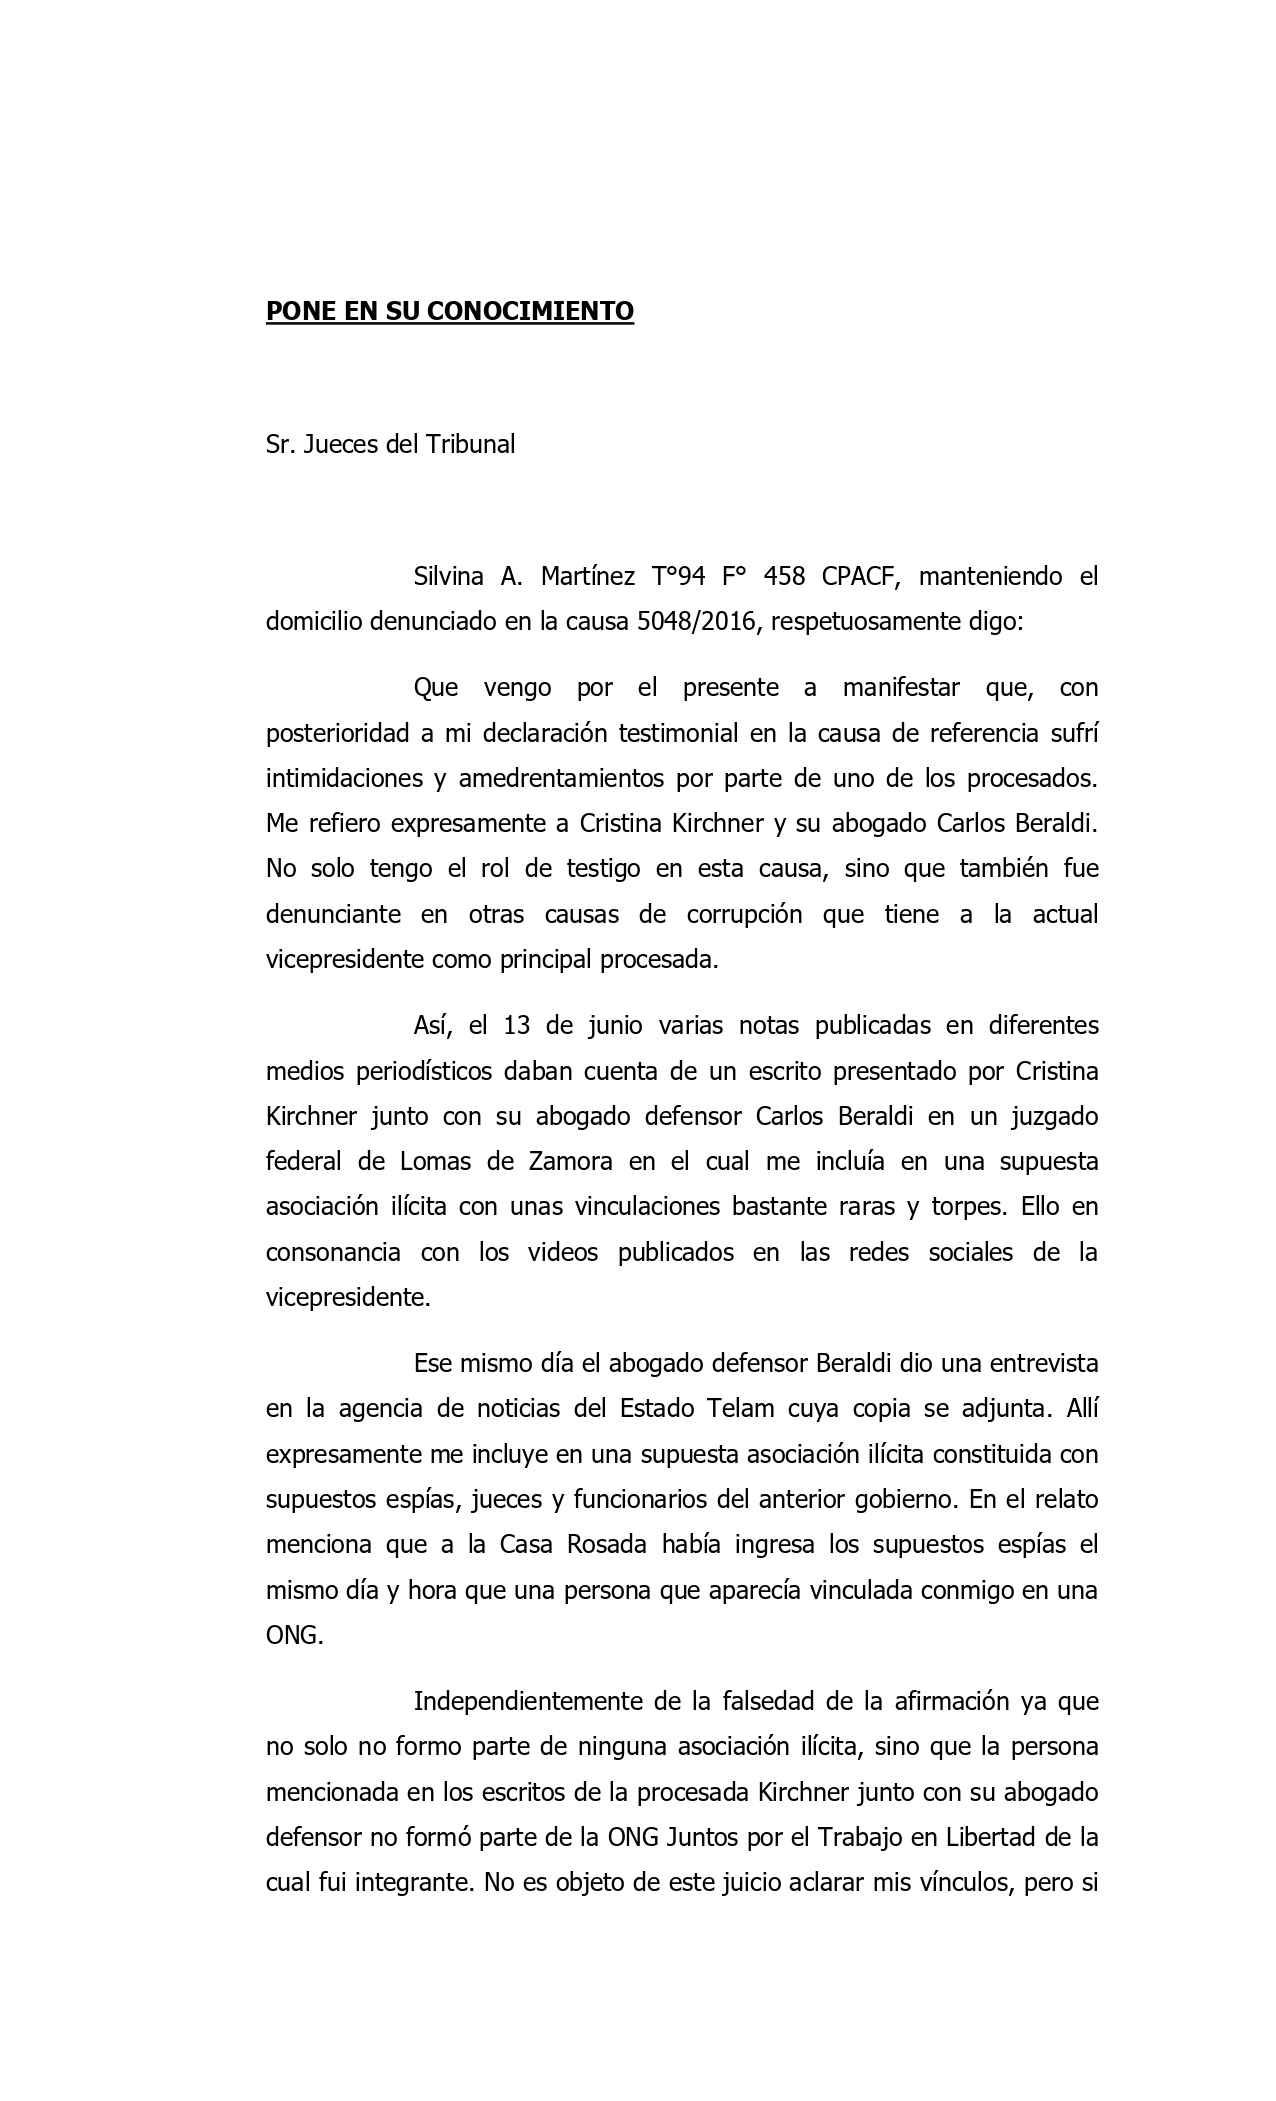 Denuncia intimidaciones por parte de Cristina Kirchner